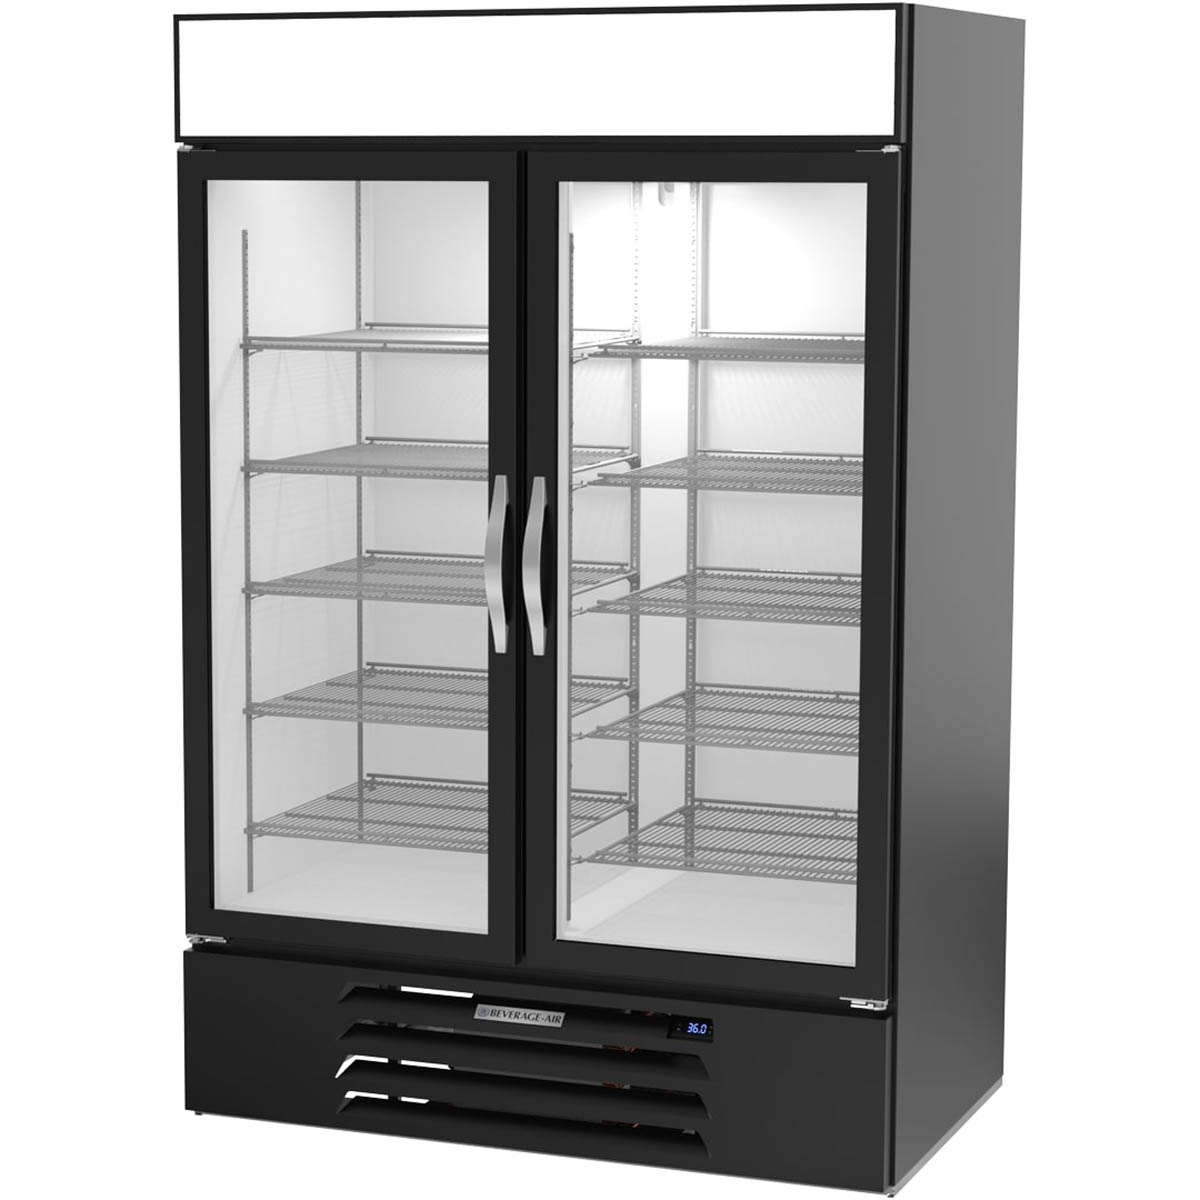 Beverage Air MMR49HC-1-B 52“ Black Refrigerated Glass Door Merchandiser